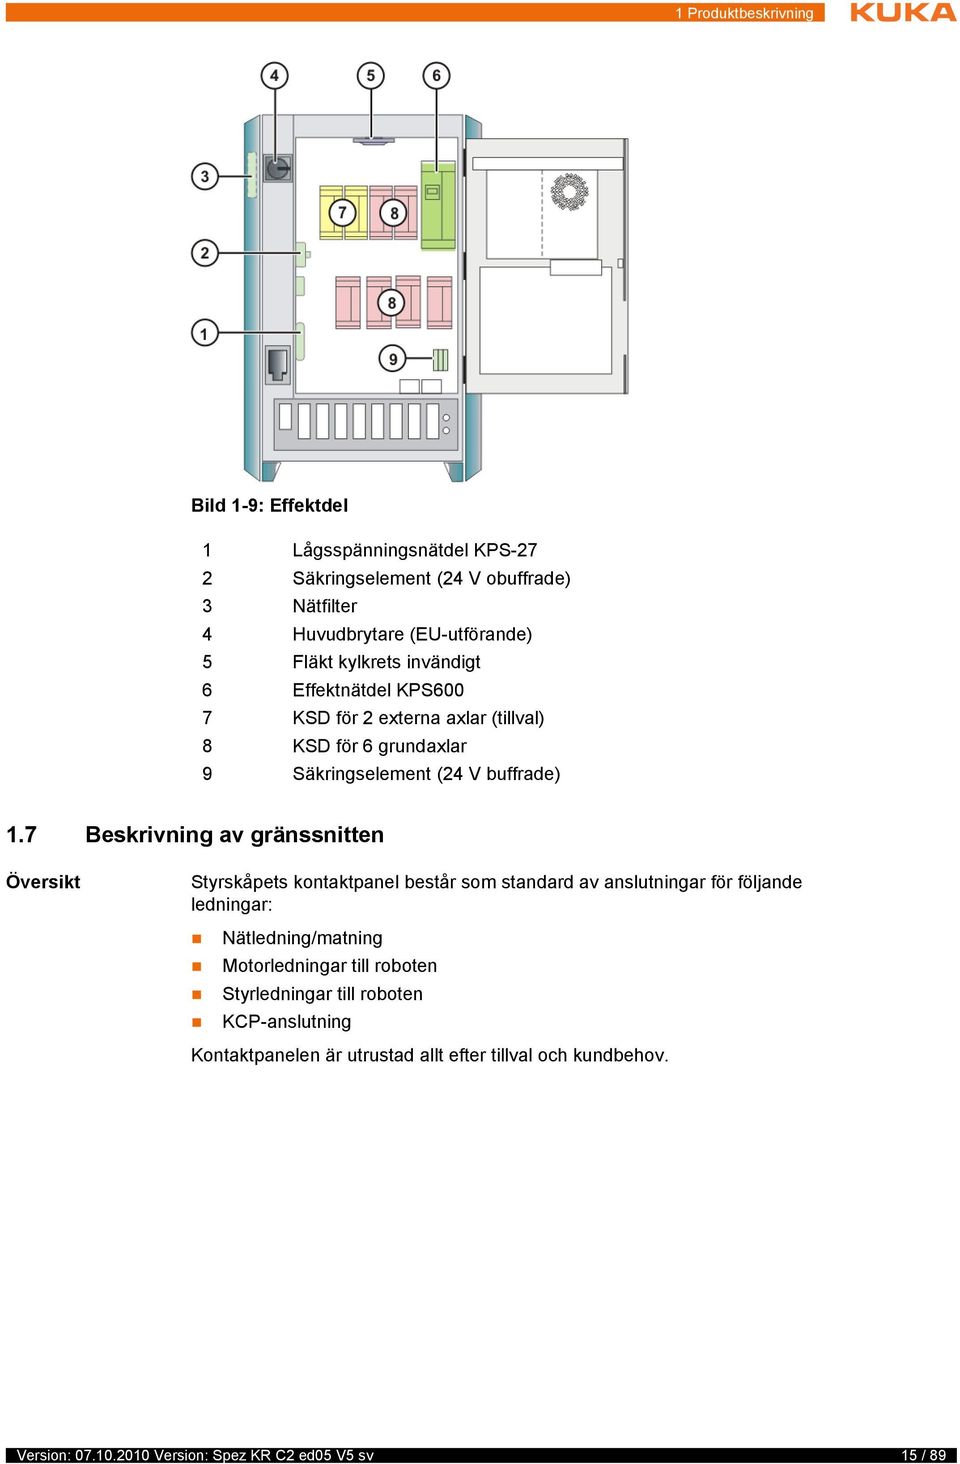 7 Beskrivning av gränssnitten Översikt Styrskåpets kontaktpanel består som standard av anslutningar för följande ledningar: Nätledning/matning